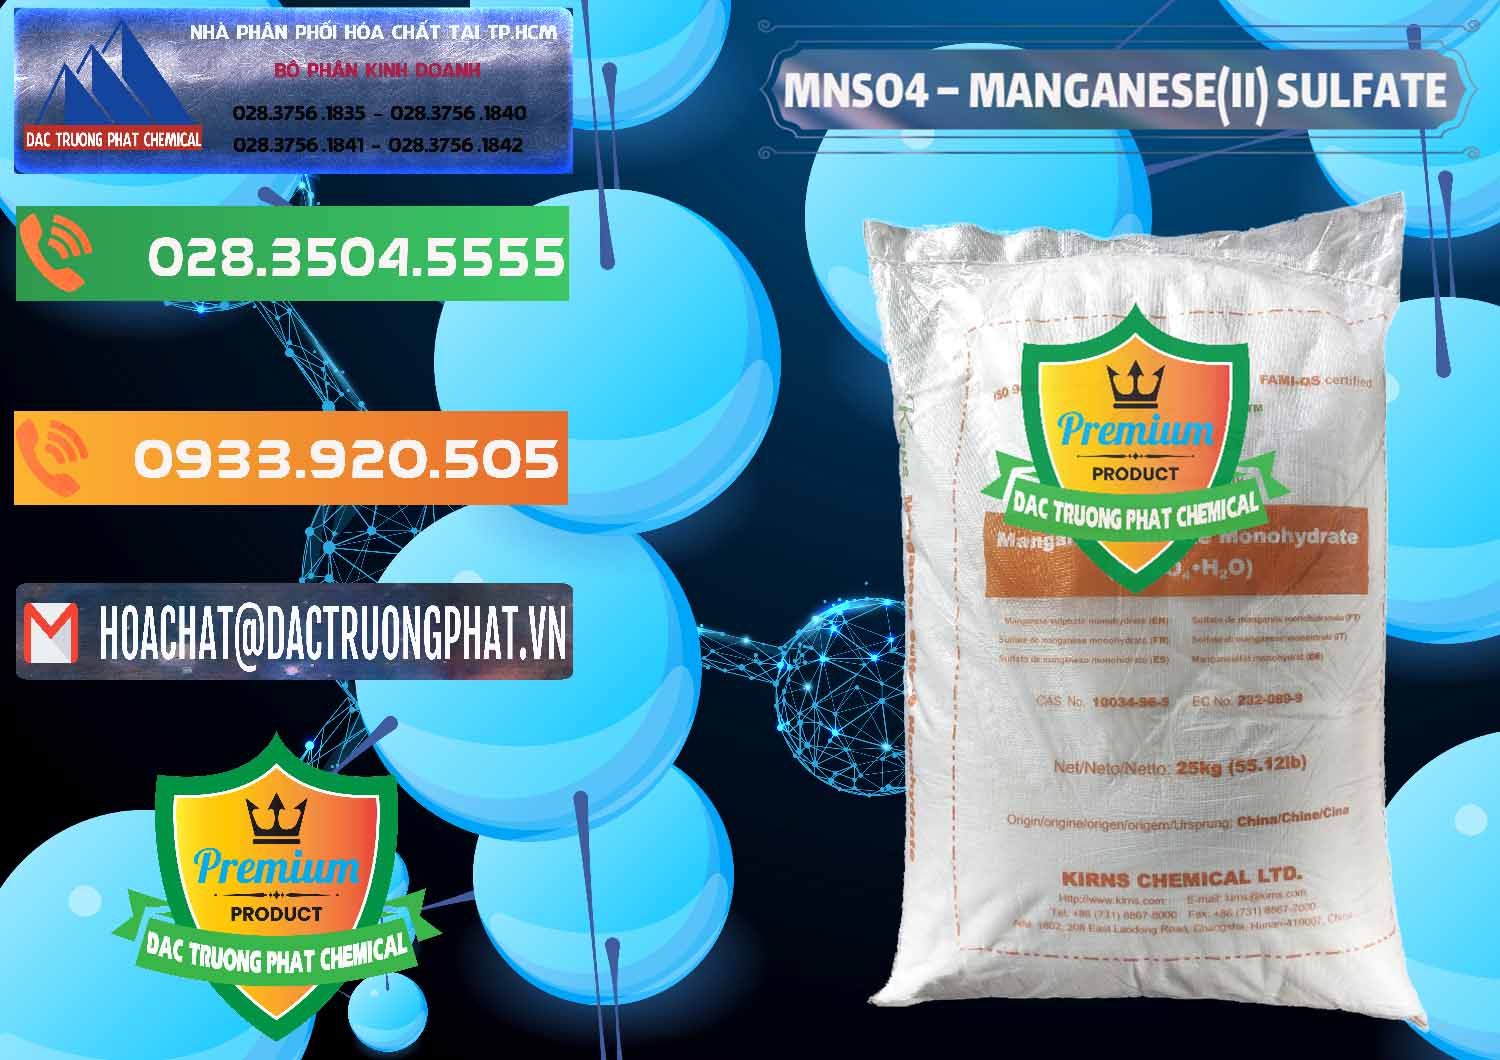 Nơi chuyên bán và phân phối MNSO4 – Manganese (II) Sulfate Kirns Trung Quốc China - 0095 - Đơn vị chuyên phân phối - cung ứng hóa chất tại TP.HCM - hoachatxulynuoc.com.vn